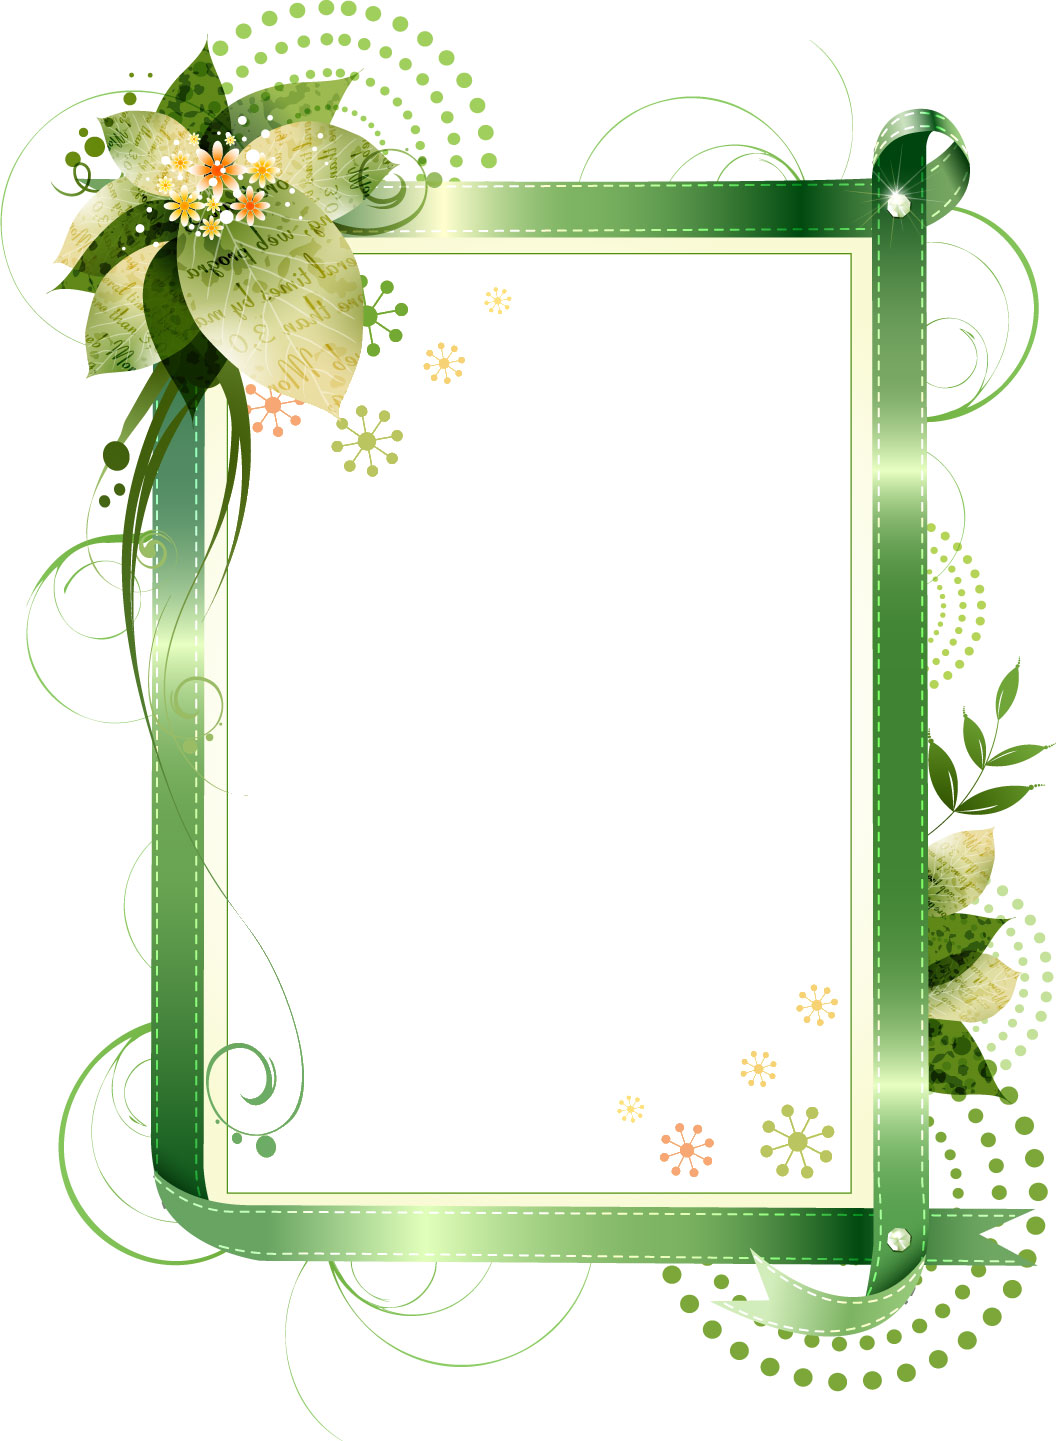 緑色の花のイラスト フリー素材 No 136 グリーンリボン